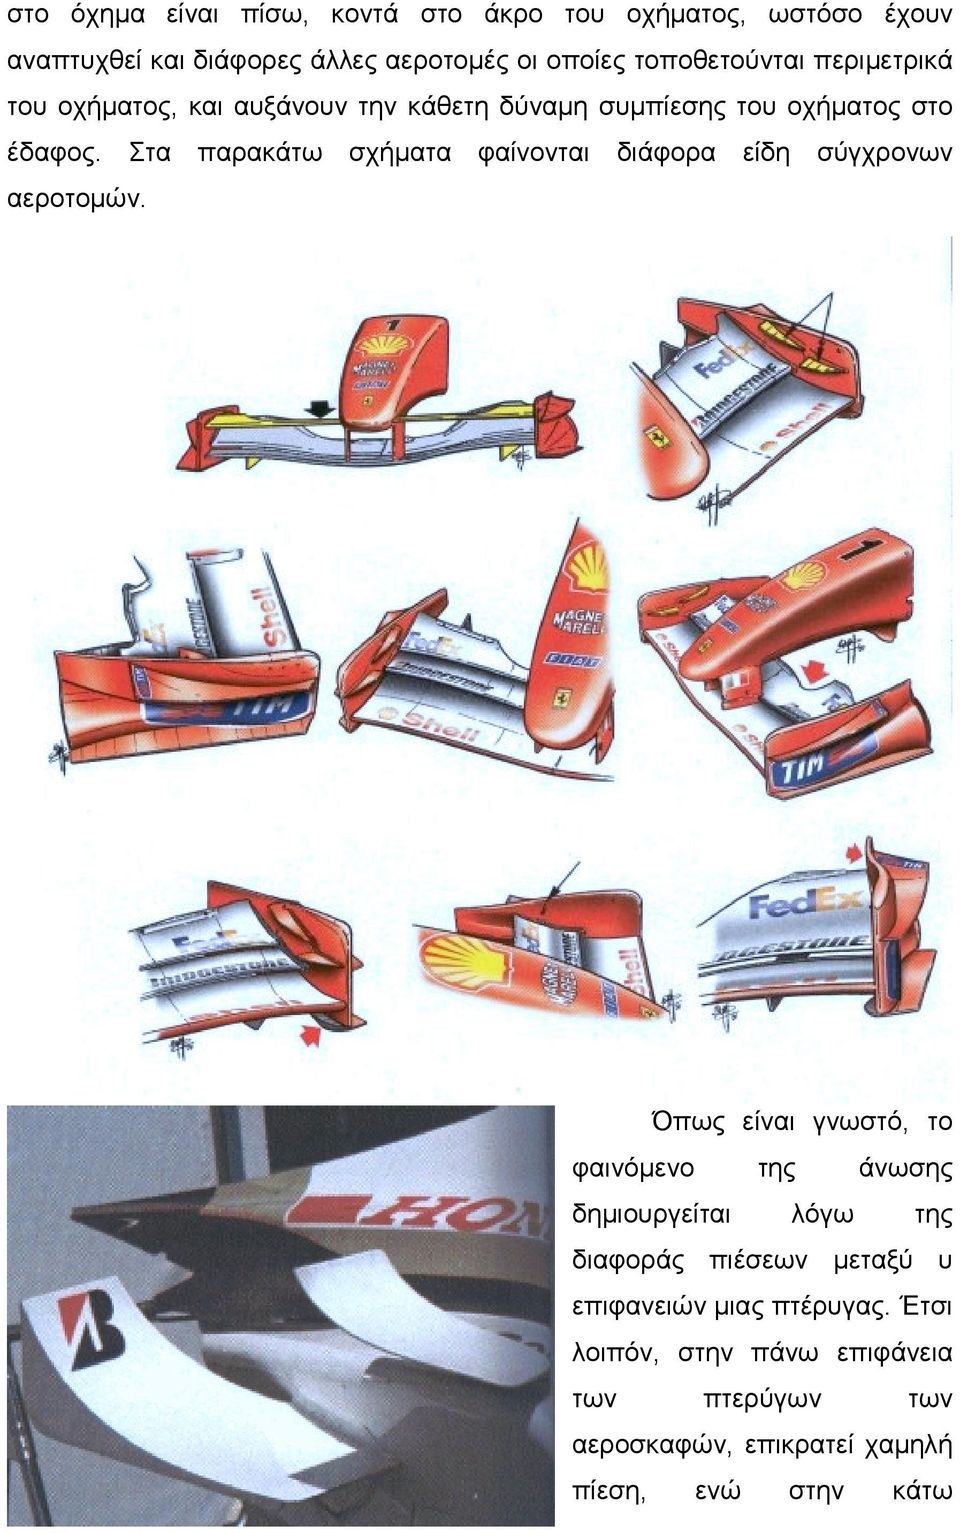 Στα παρακάτω σχήματα φαίνονται διάφορα είδη σύγχρονων αεροτομών.